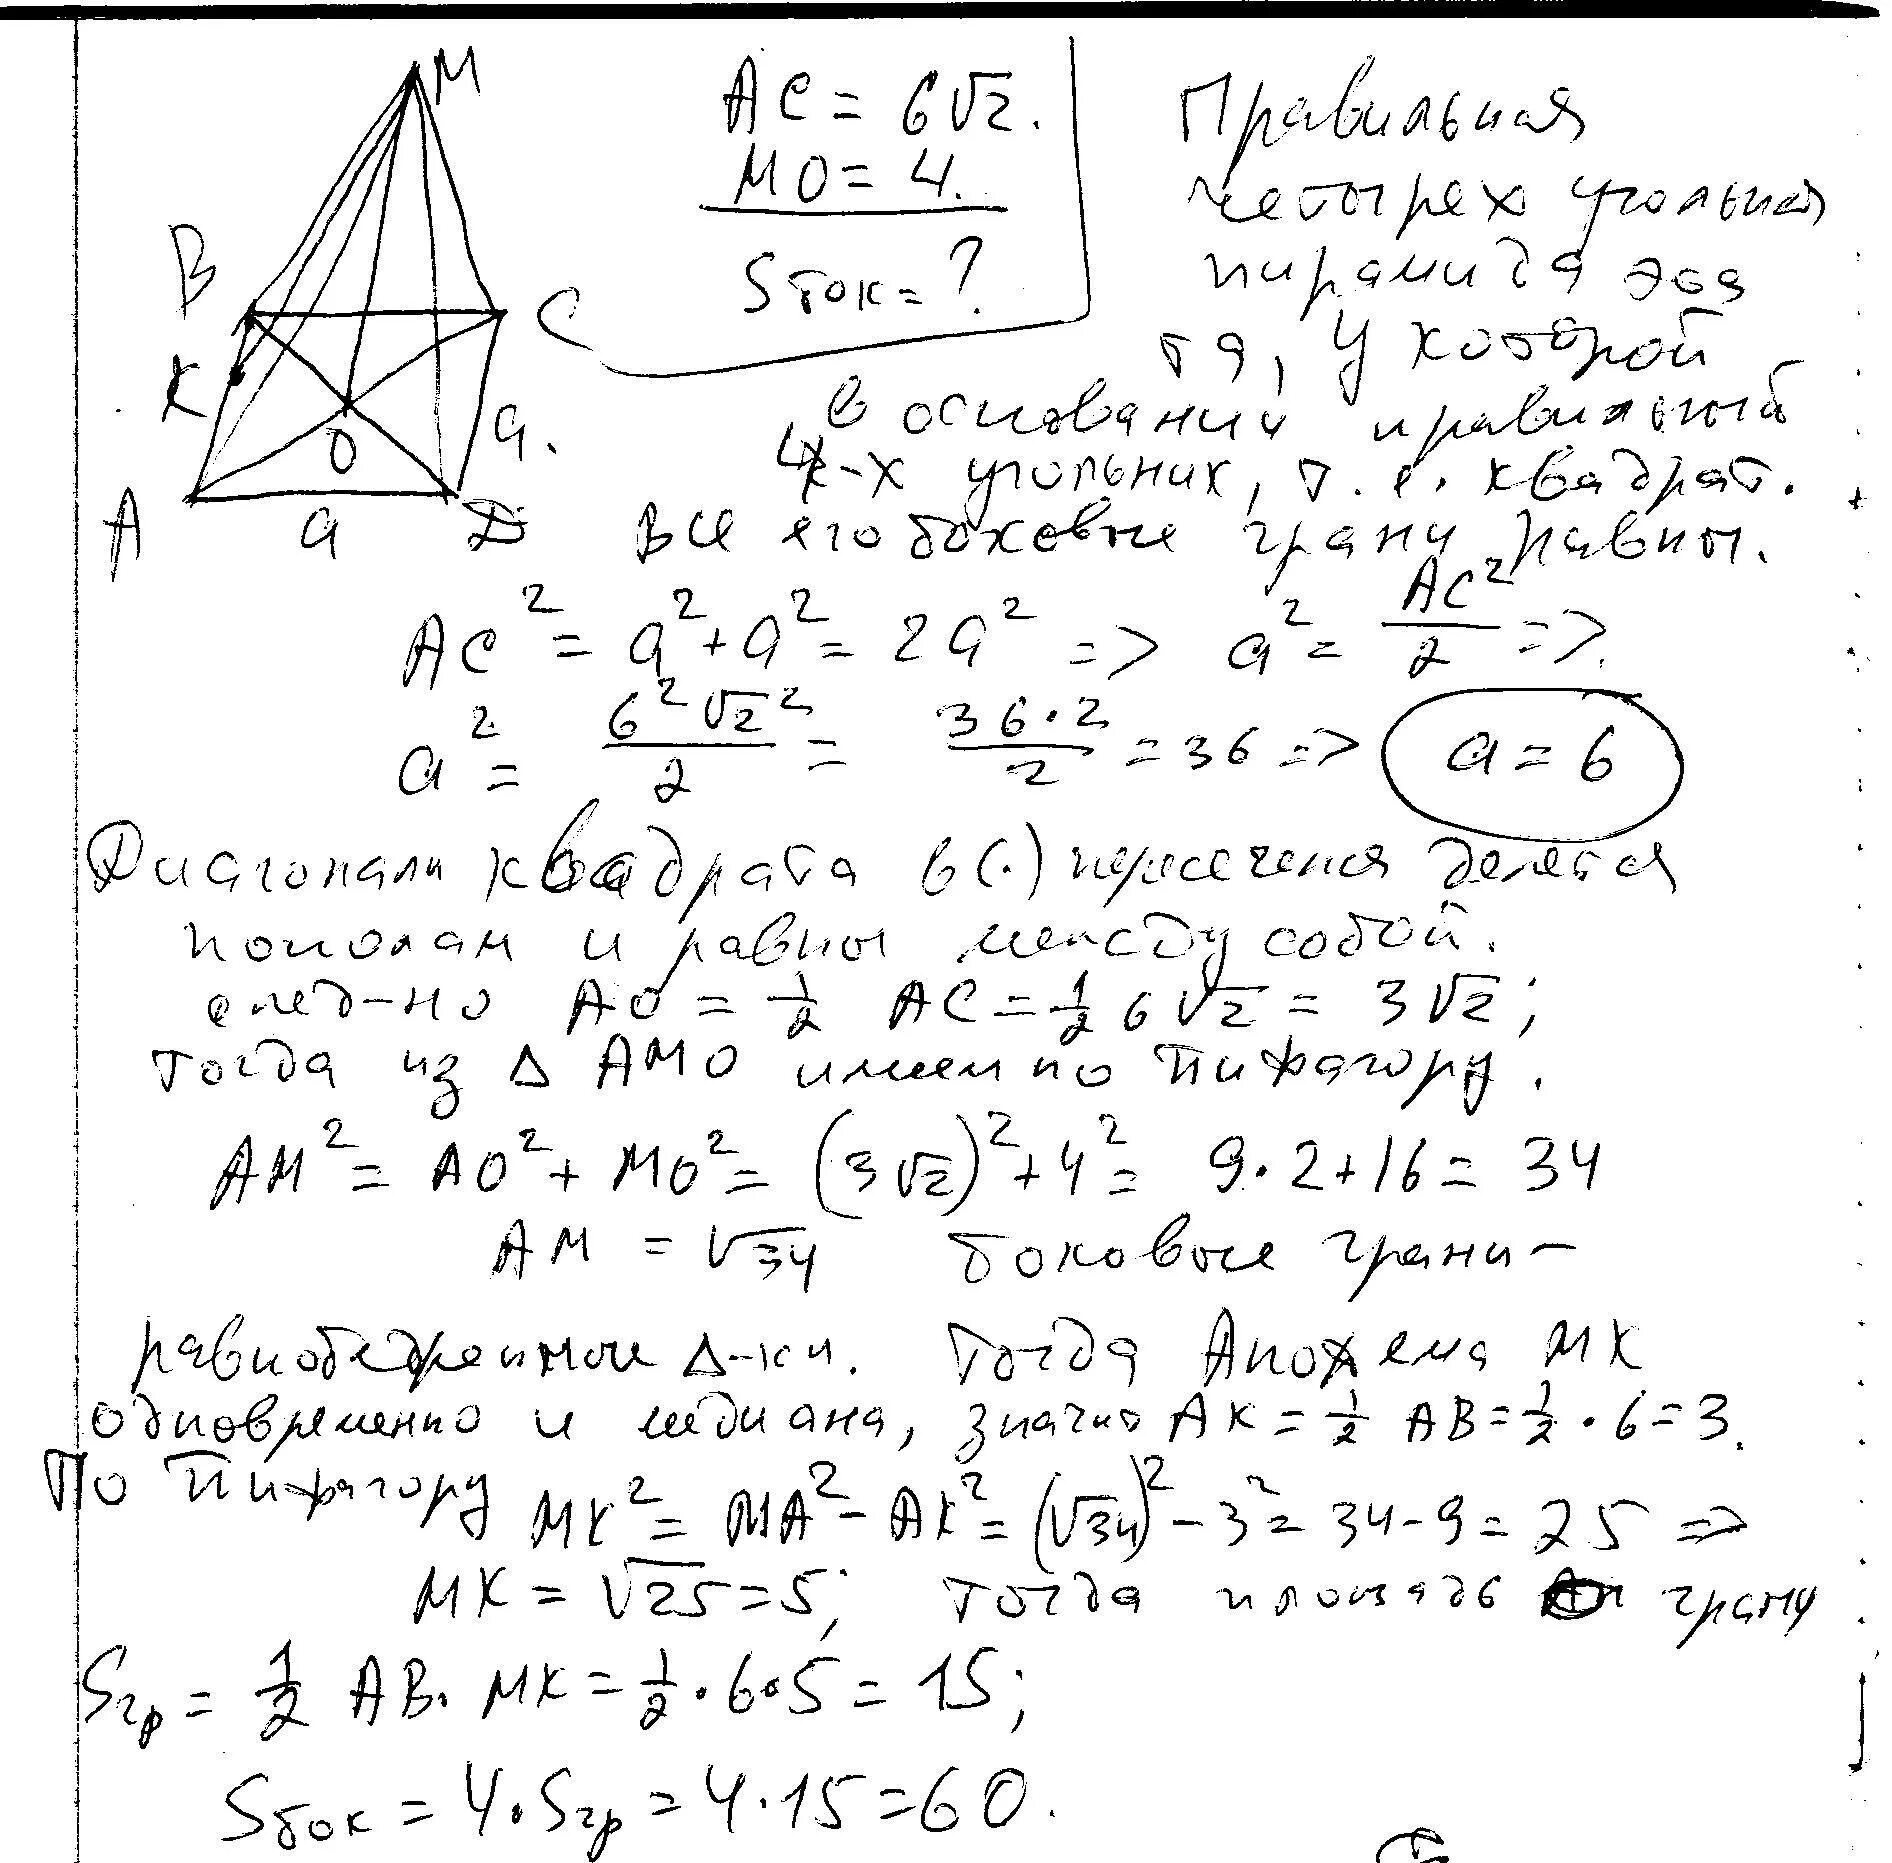 Диагональ основания правильной пирамиды. Диагональ основания правильной пирамиды МАВСД равна. Диагональ основания правильной пирамиды равна 6.